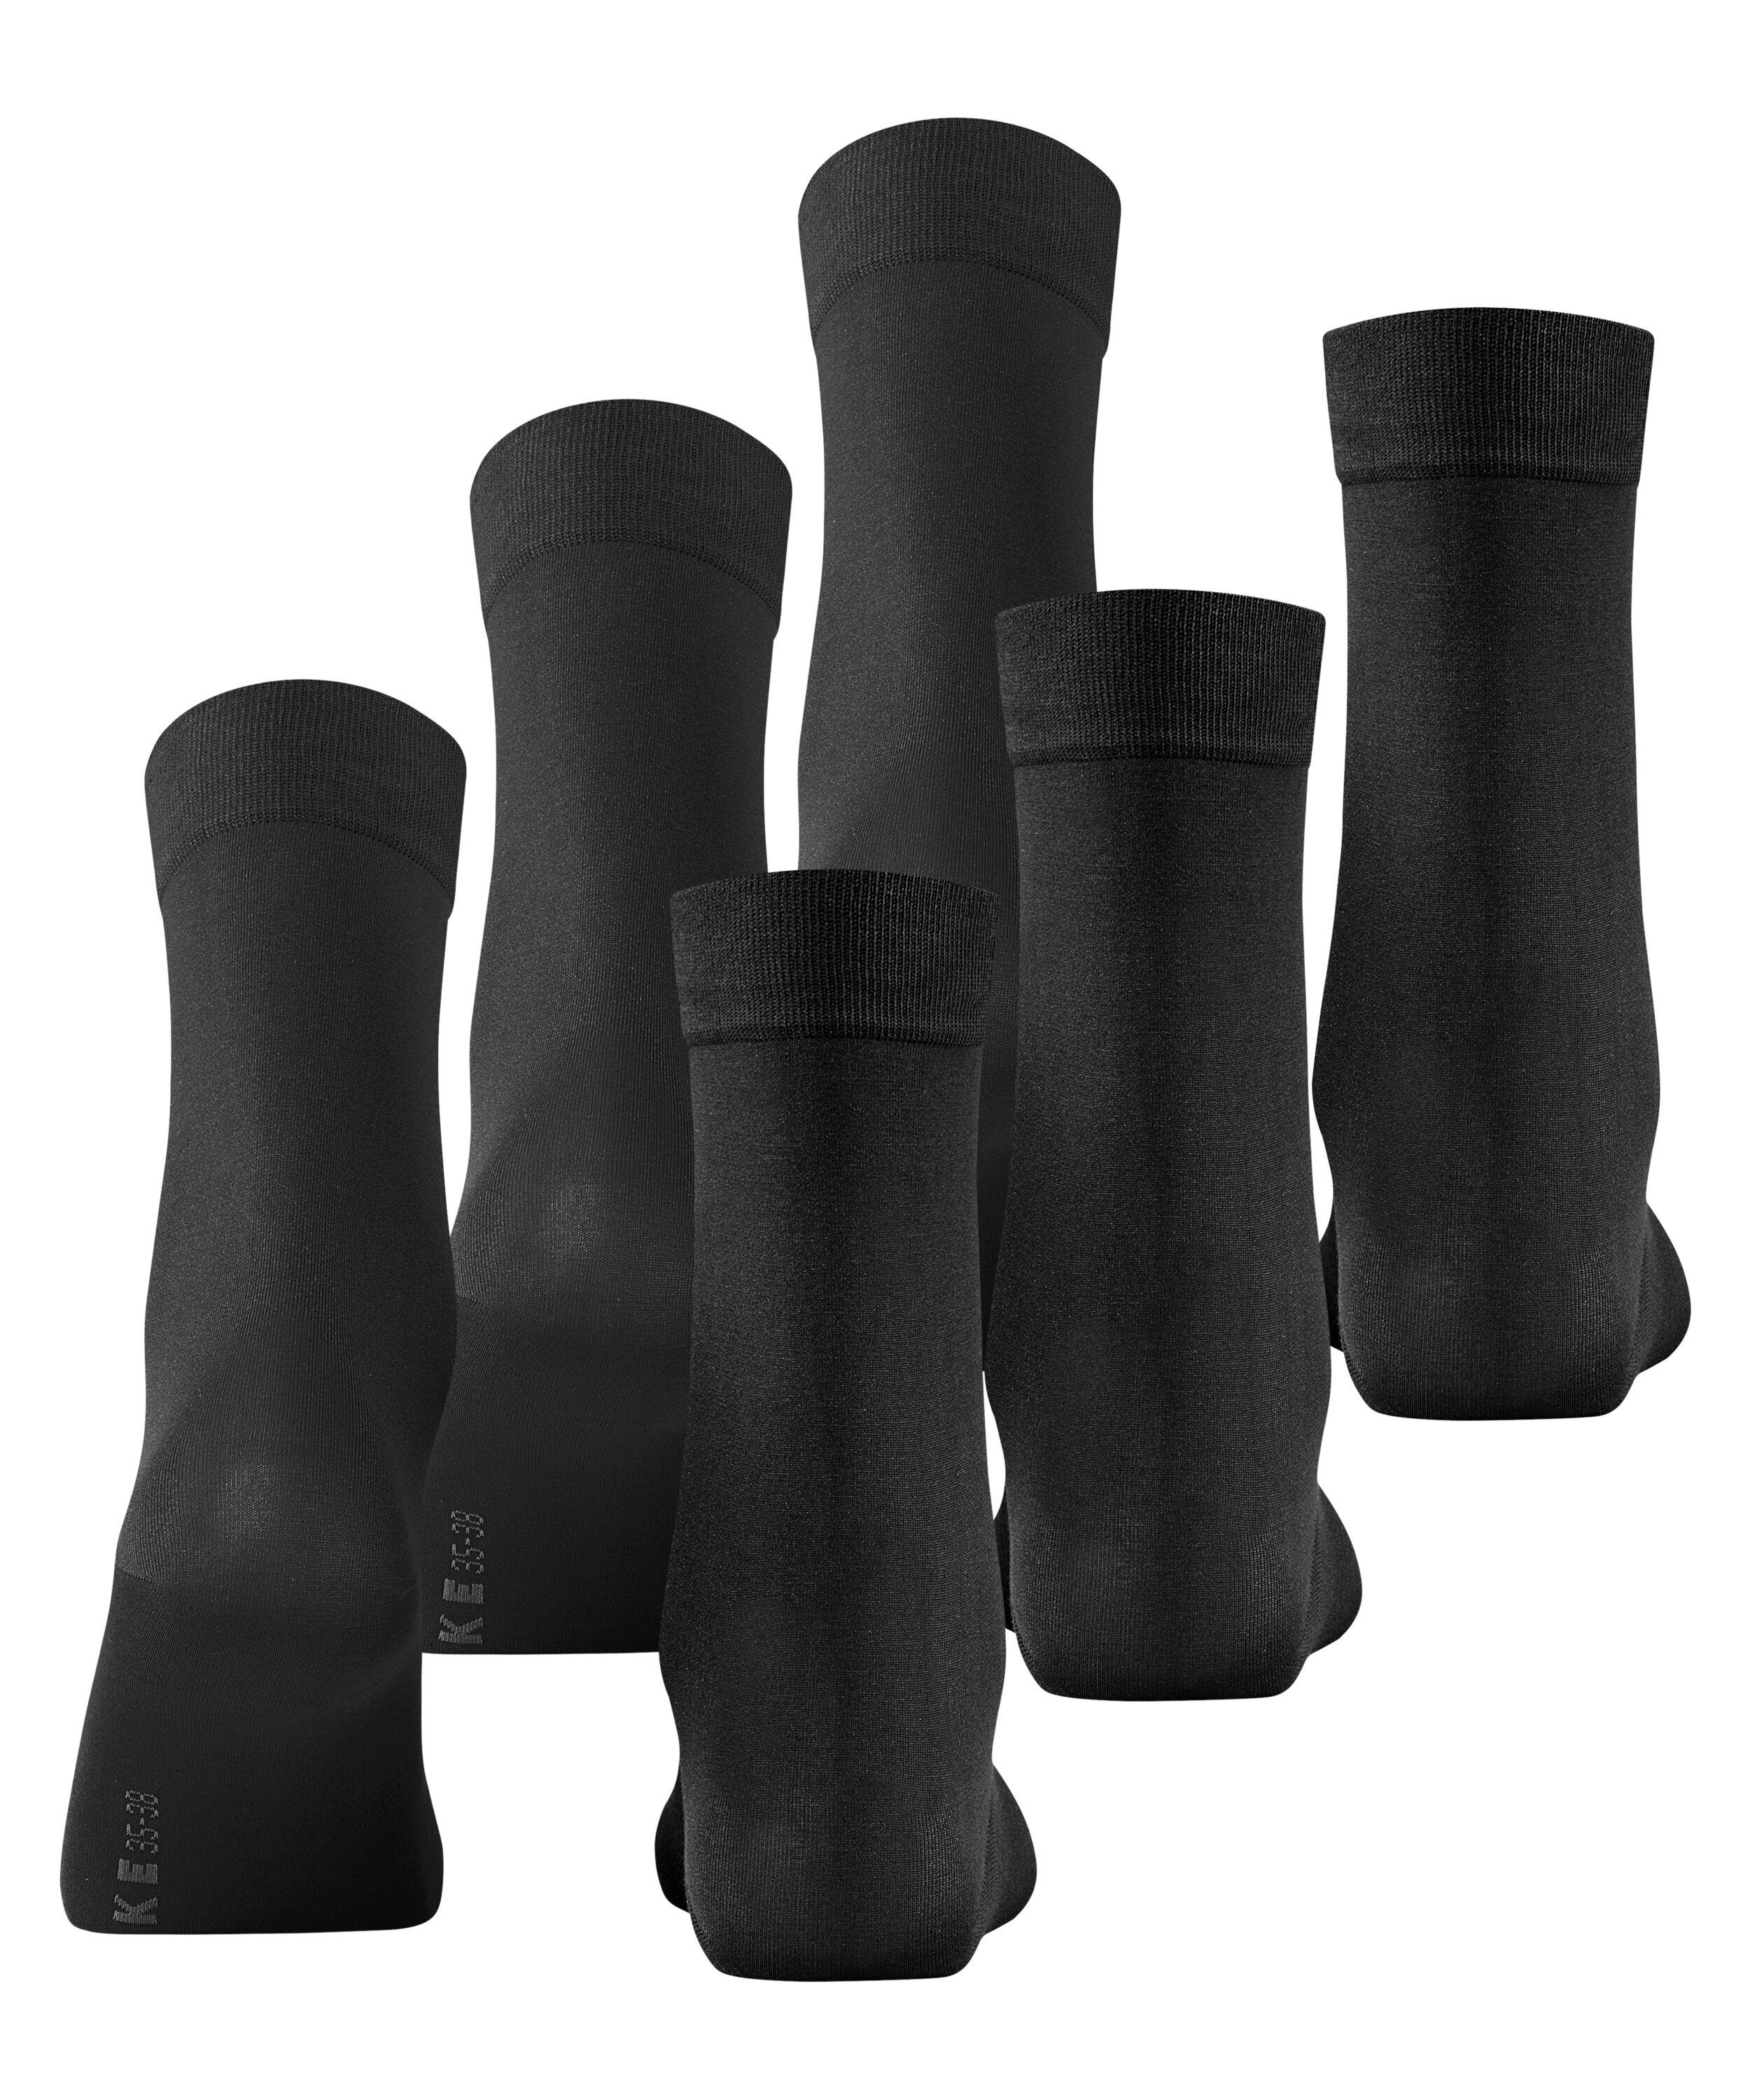 FALKE (3000) black Cotton (3-Paar) 3-Pack Socken Touch